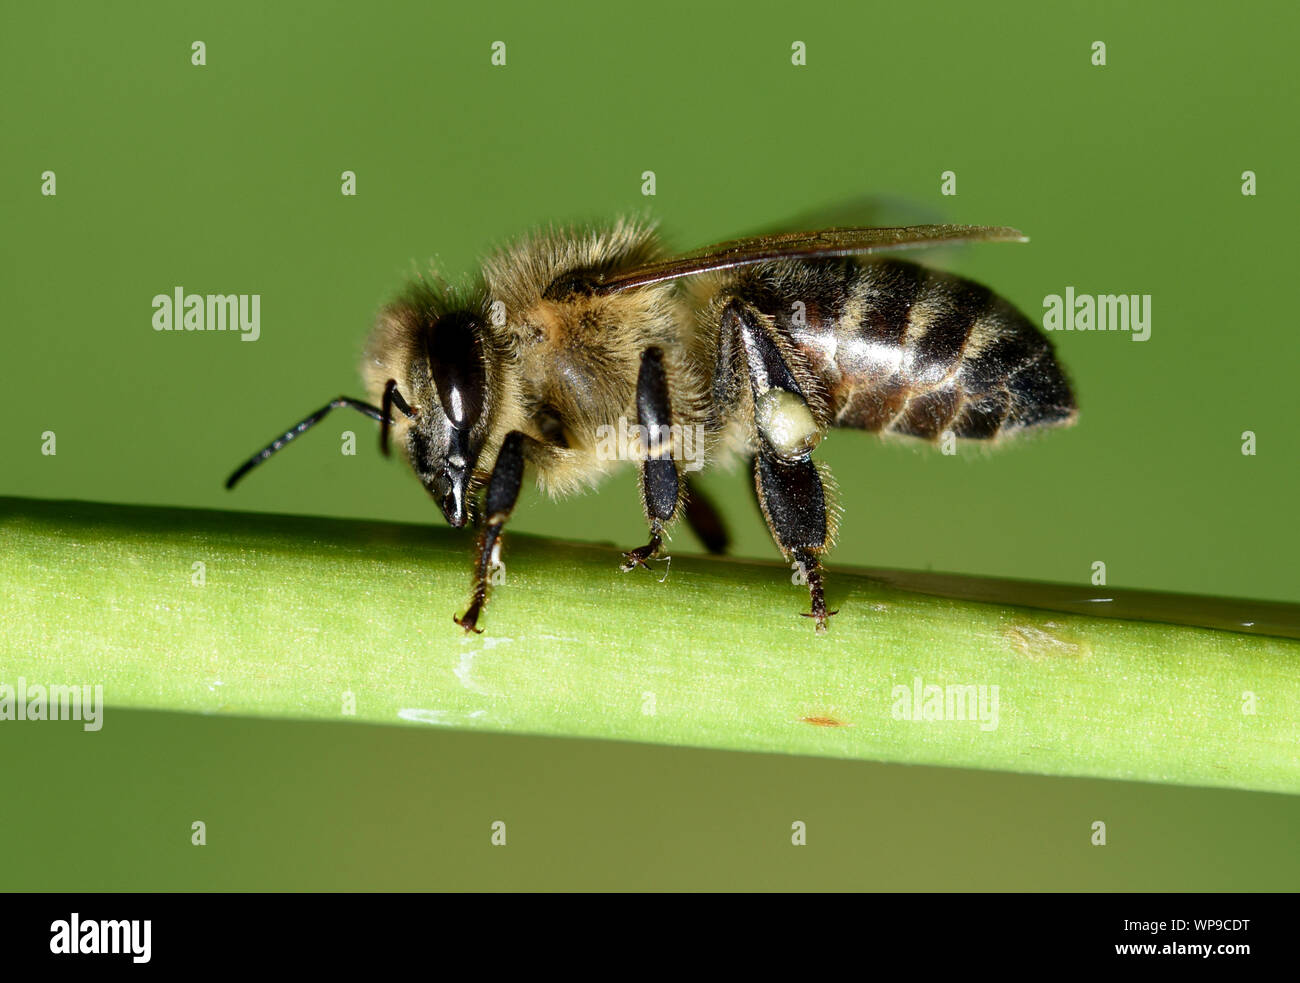 Honigbiene, Apis mellifera, ist ein wichtiges Insekt zur Bestaeubung von Pflanzen und zum Sammeln von Honig. Honey bee, Apis mellifera, is an importan Stock Photo